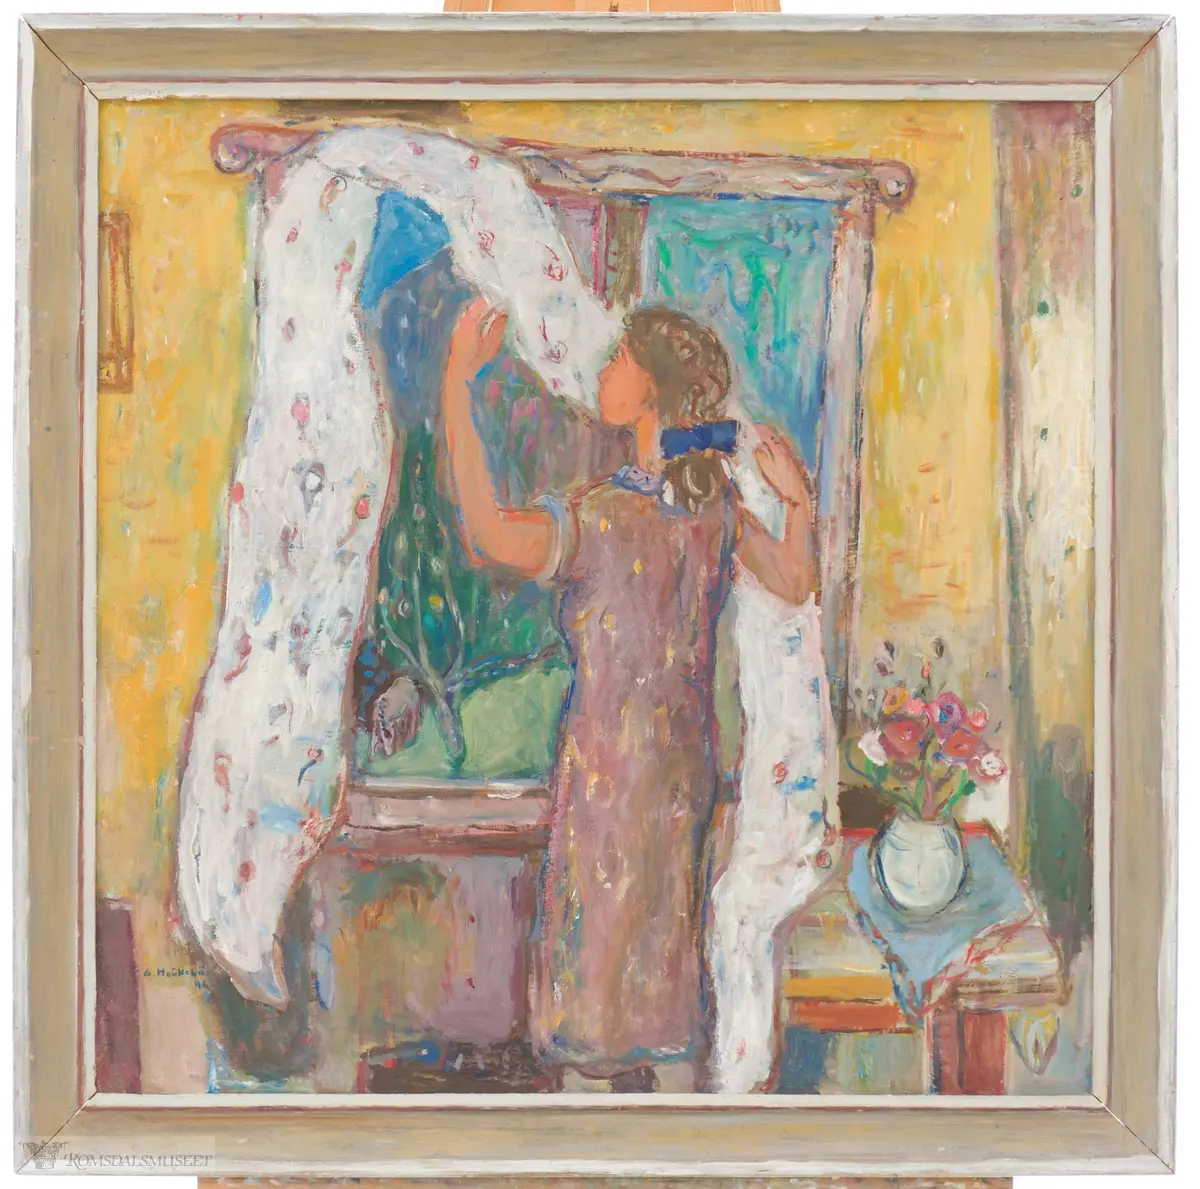 En kvinne henger opp en lys gardin i et vindu. utenfor kan en frodig hage sees. Ved kvinnens høyre side, et lite bord med en hvit vase med sommerblomster i.